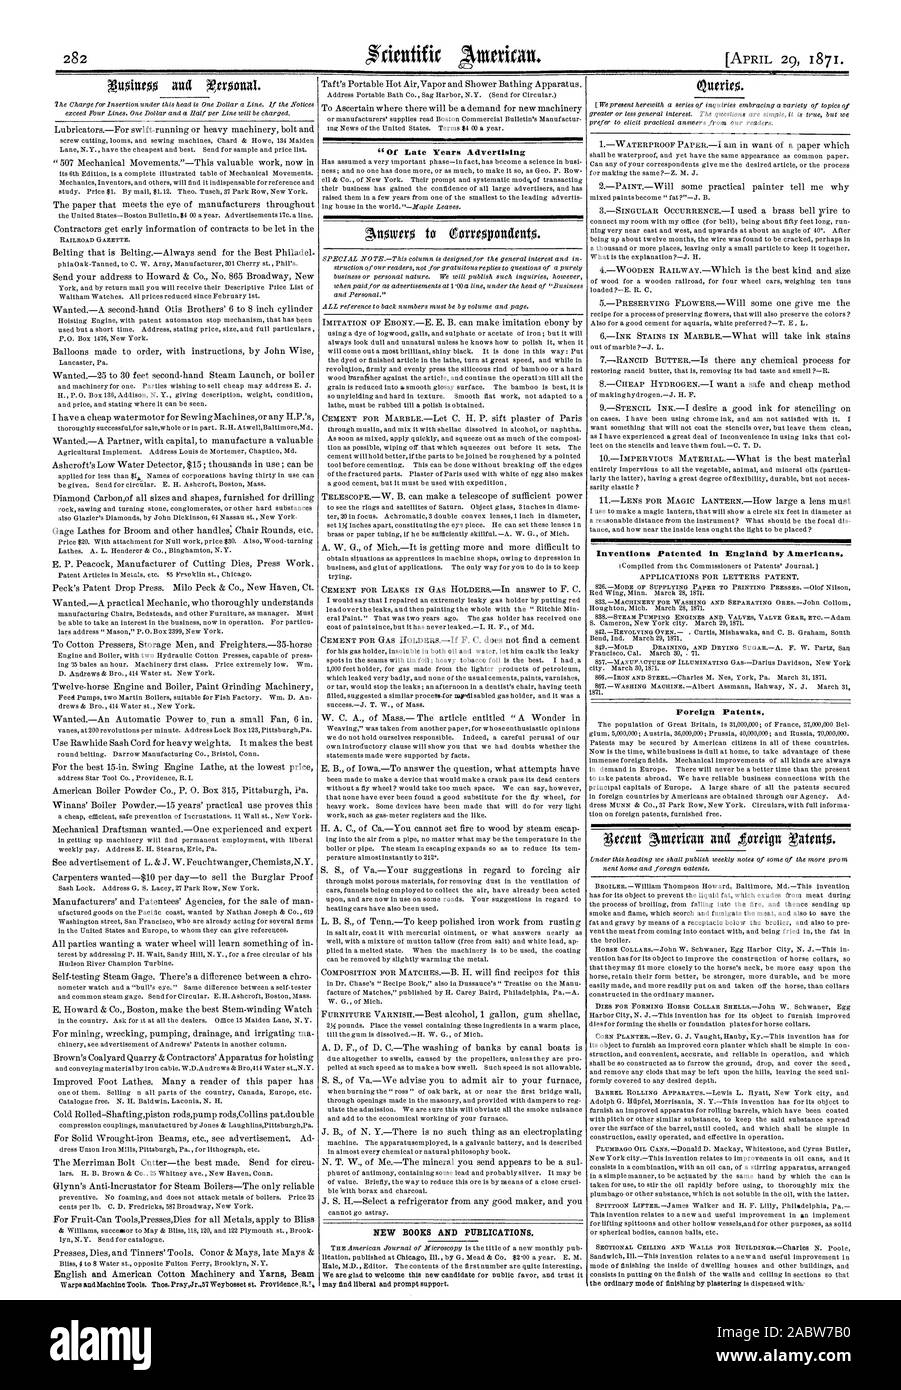 Dei tardi anni pubblicità NUOVI LIBRI E PUBBLICAZIONI invenzioni brevettate in Inghilterra dagli americani. Brevetti stranieri., Scientific American, 1871-04-11 Foto Stock